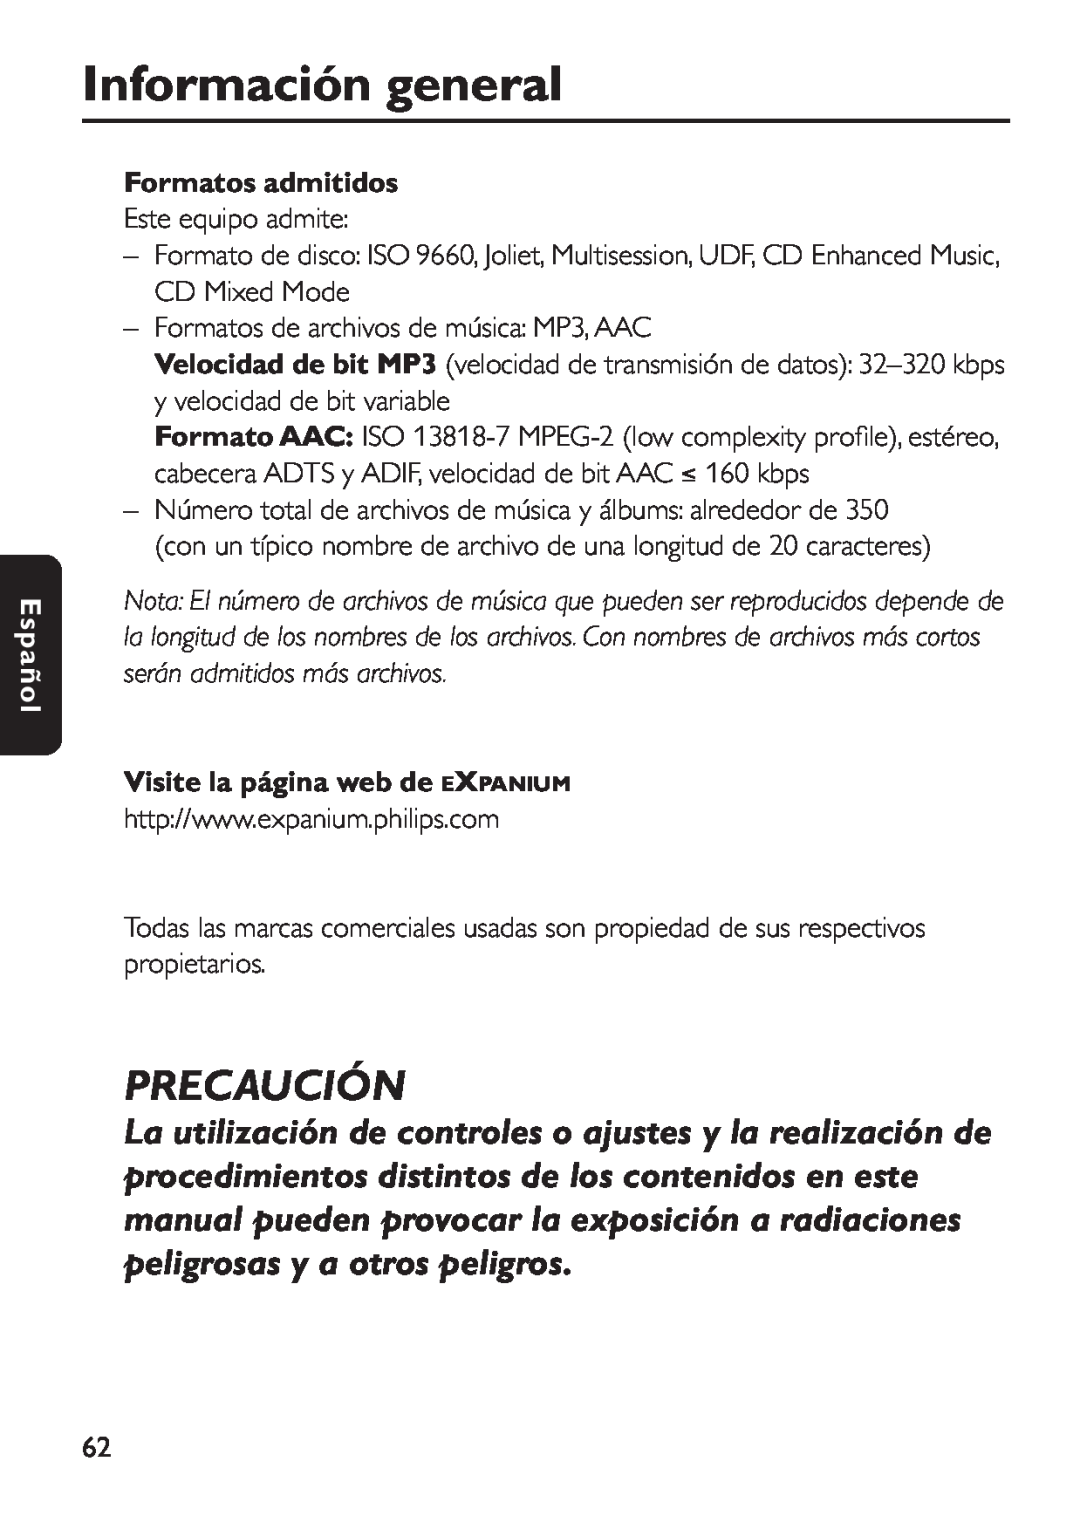 Philips EXP 501/00 manual Precaución, Formatos admitidos, Visite la página web de EXPANIUM, Información general, Español 